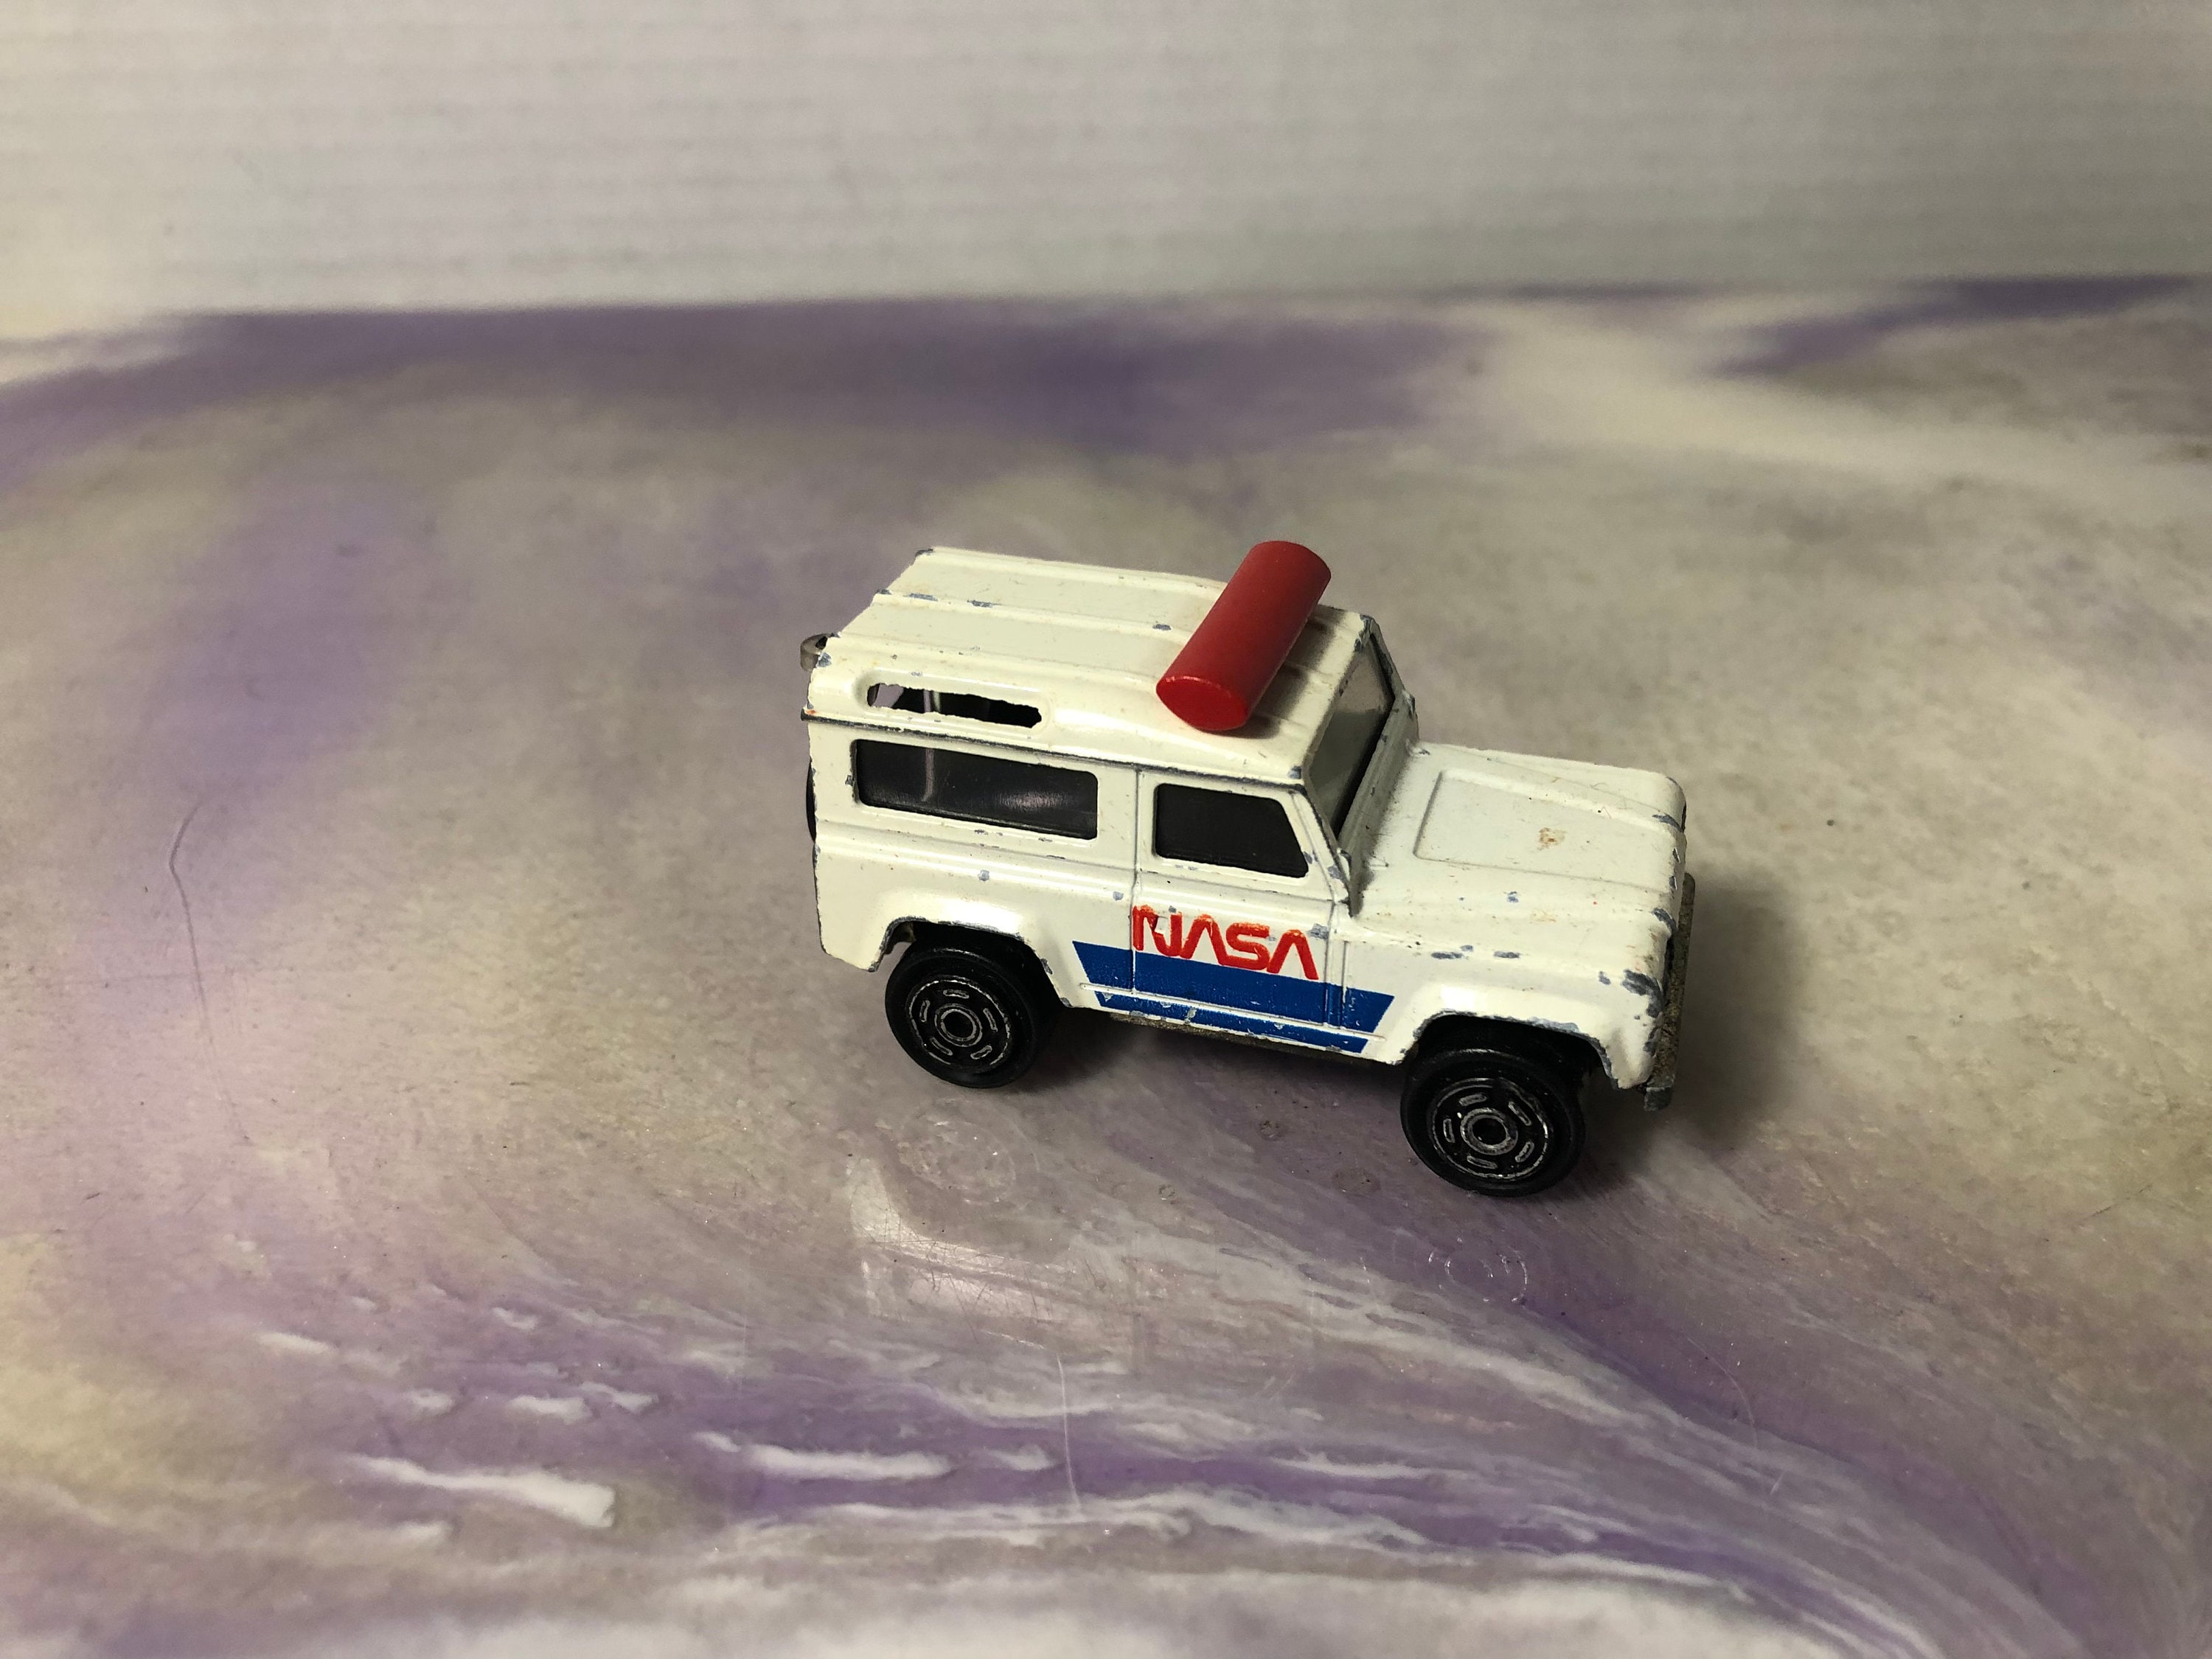 Miniature majorette Land Rover défendeur avec caravane - Majorette